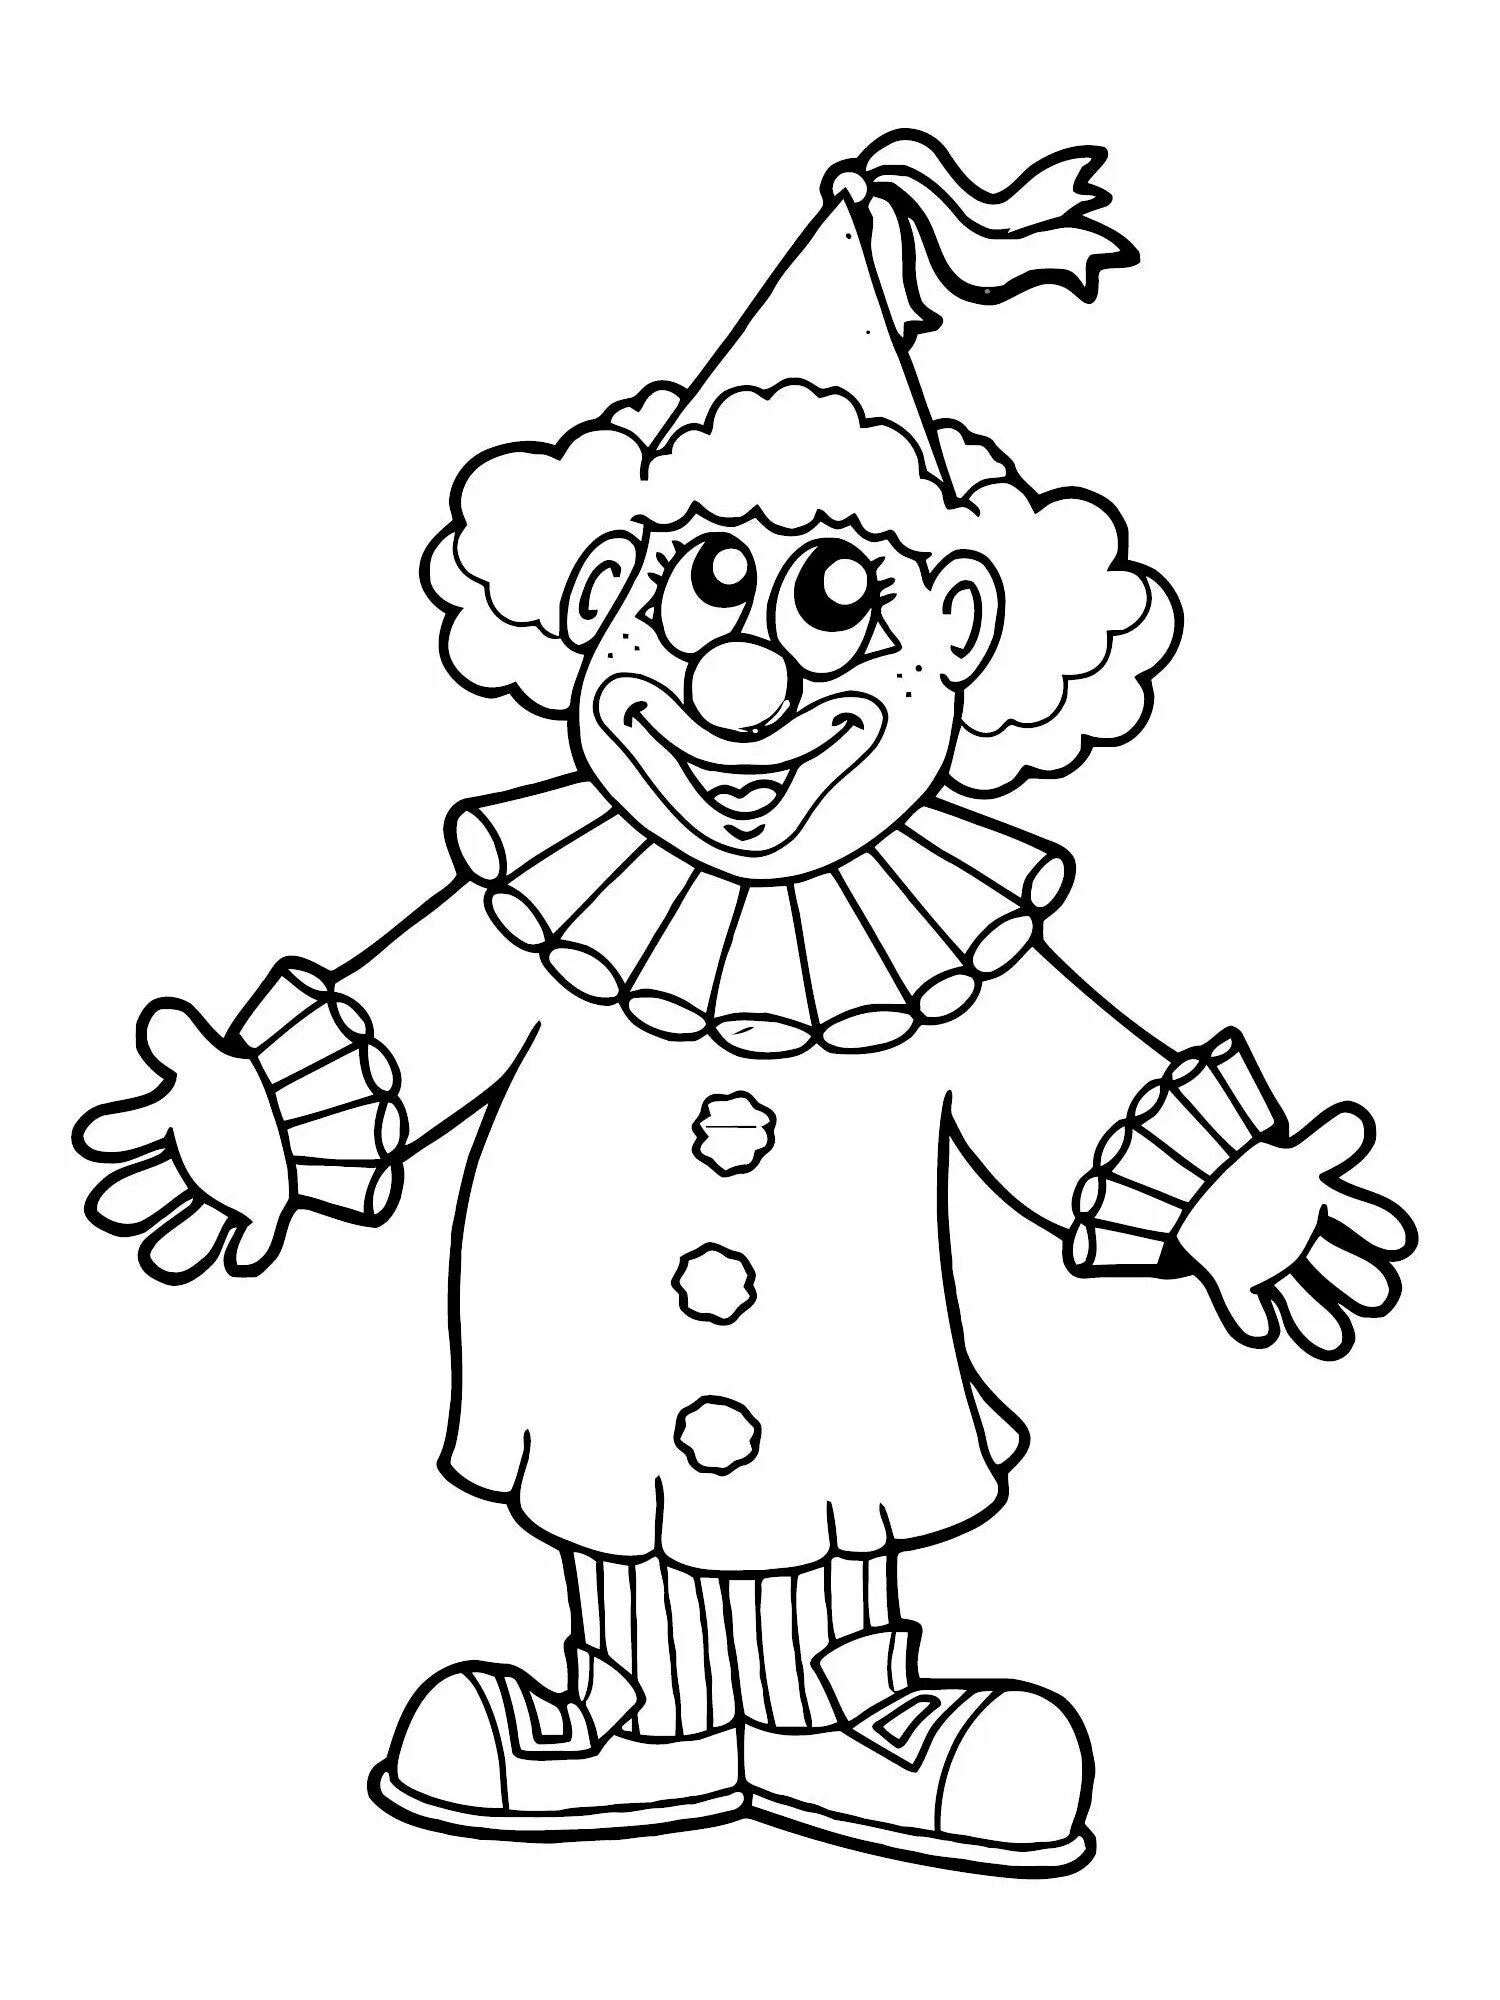 Клоуны раскраска для детей 5 лет. Клоун раскраска. Клоуны для детей. Клоун раскраска для детей. Клоун картинка.